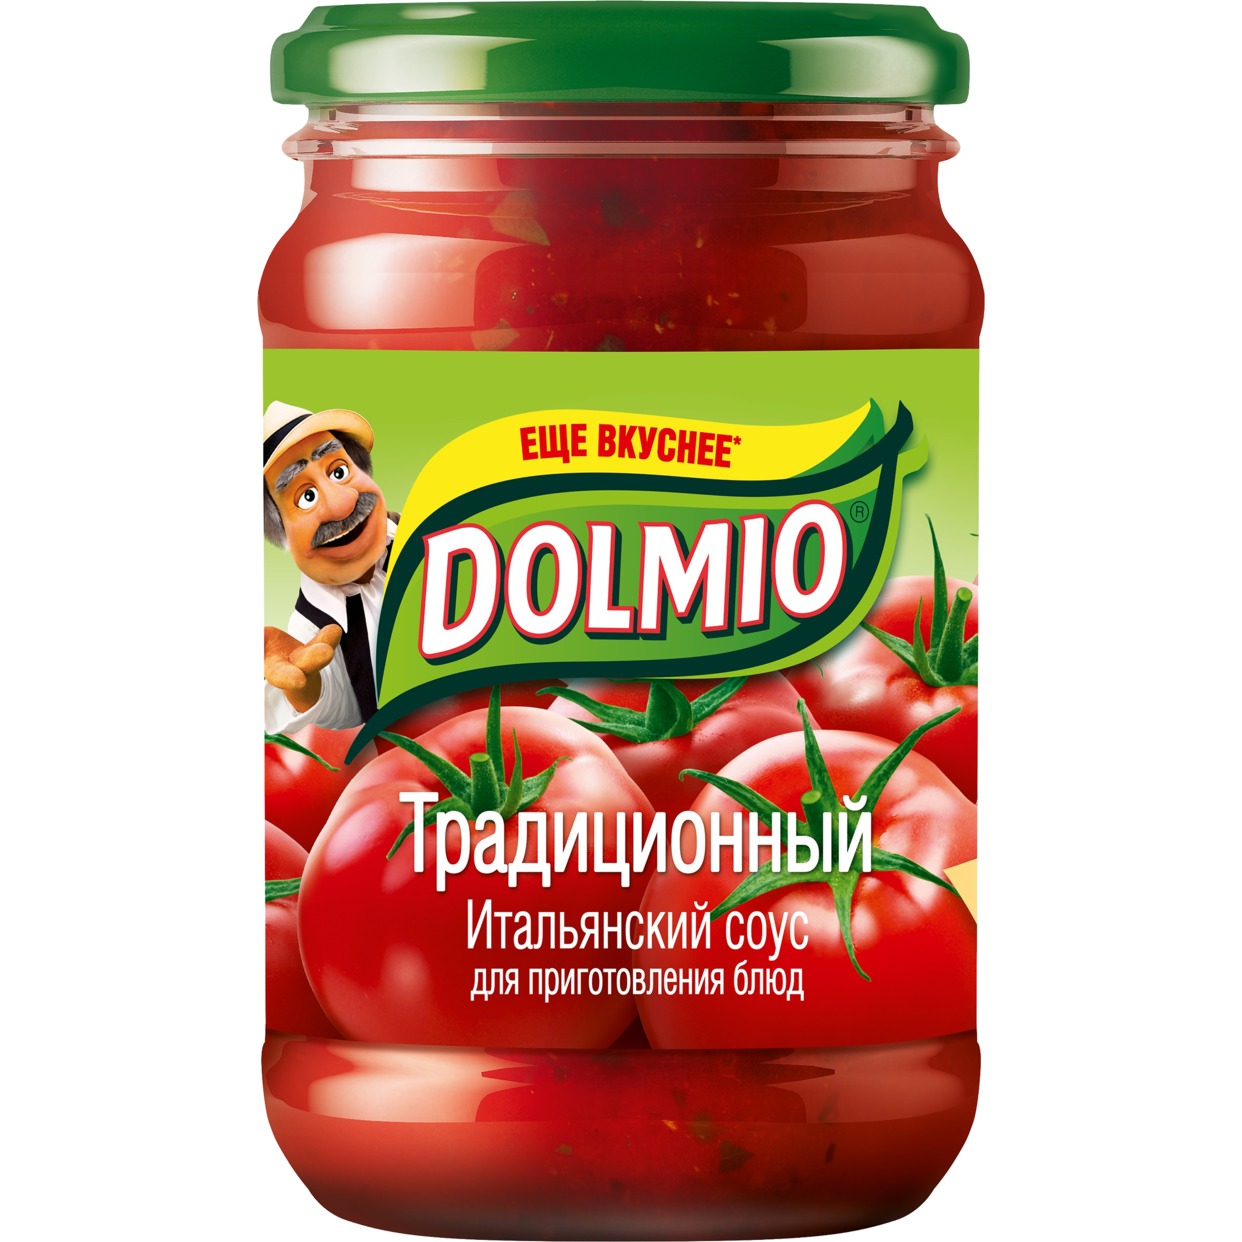 Соус Dolmio томатный традиционный для болоньезе 350 г по акции в Пятерочке